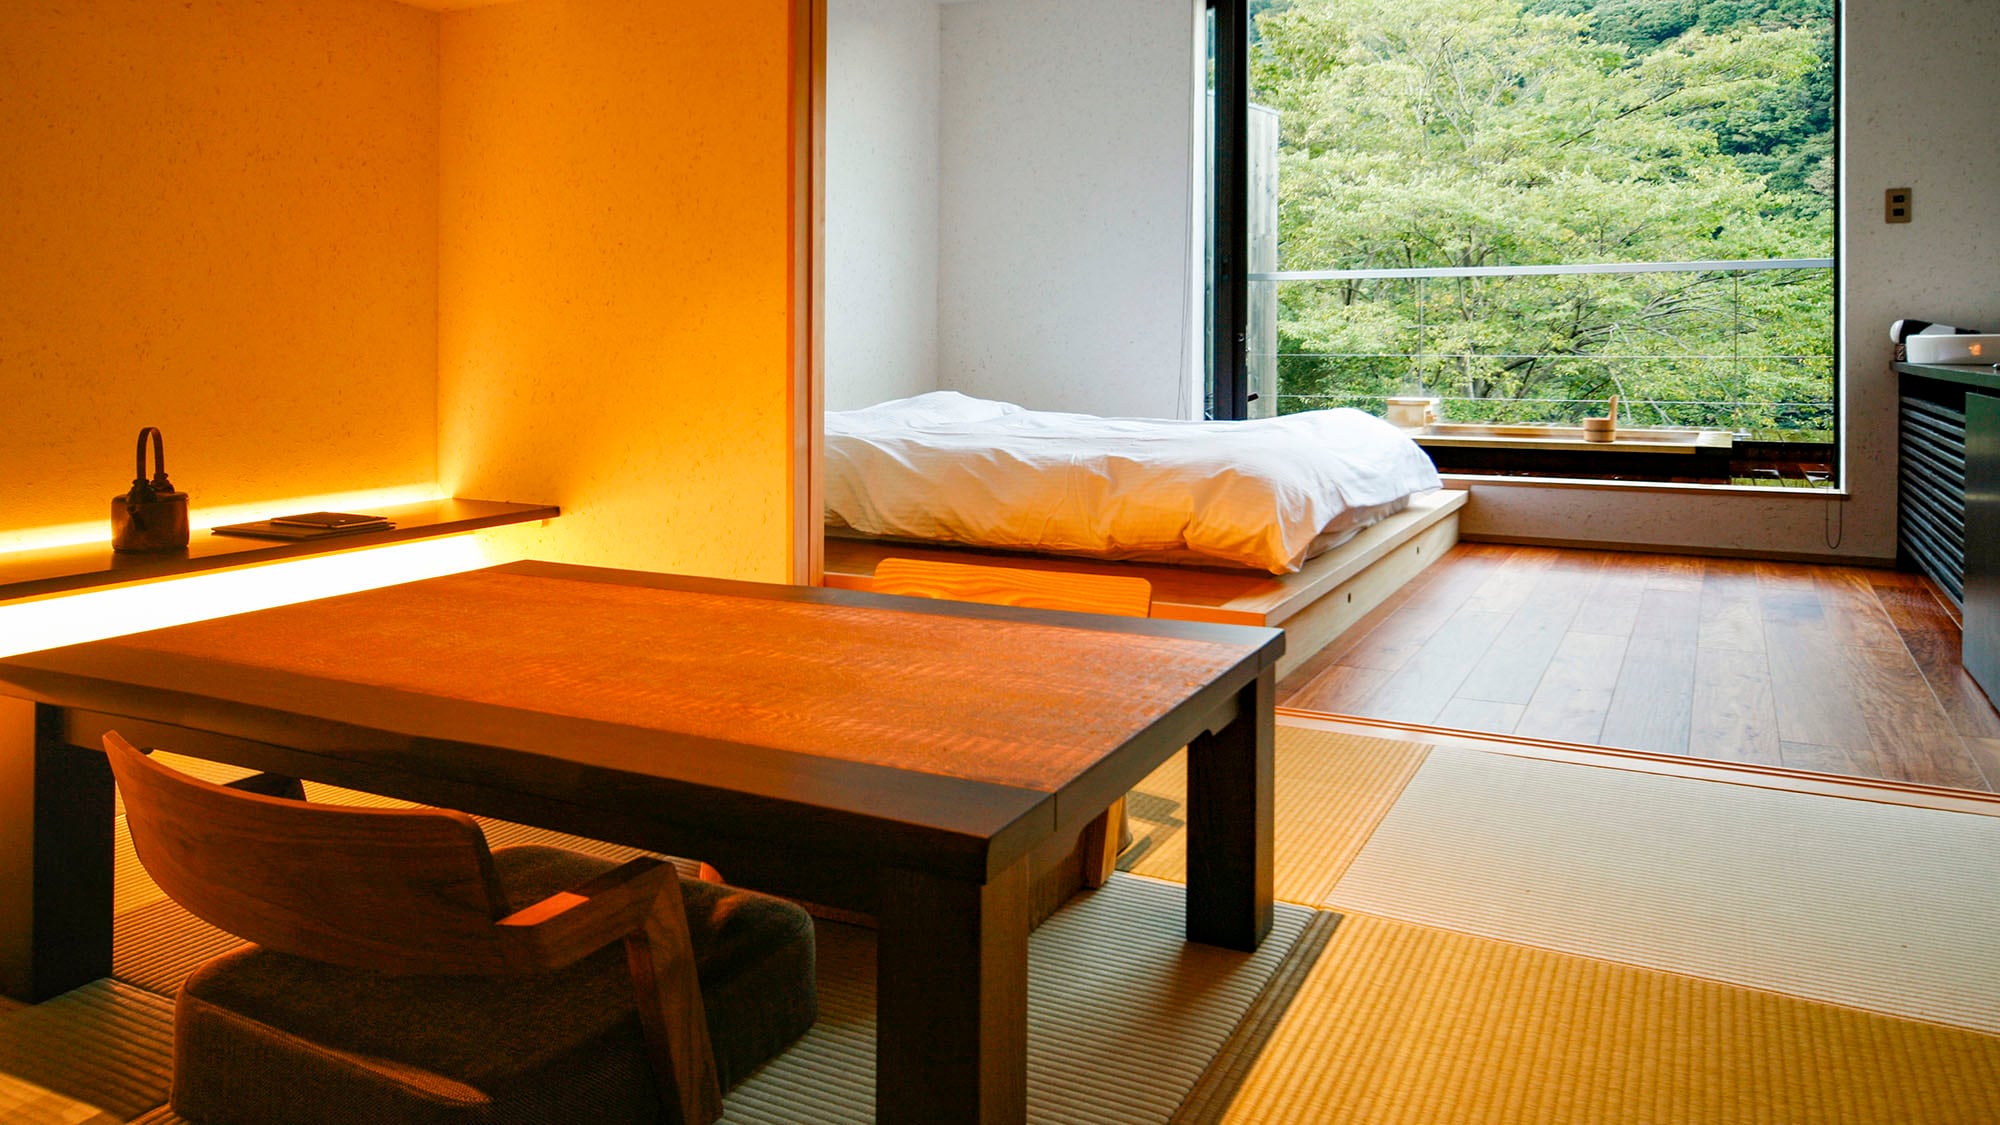 ・[ตัวอย่างหนึ่งของห้องพัก Shion] ห้องที่มีอ่างอาบน้ำแบบเปิดโล่ง + ห้องสไตล์ญี่ปุ่นขนาด 6 เสื่อทาทามิ + ห้องนอนเตียงคู่